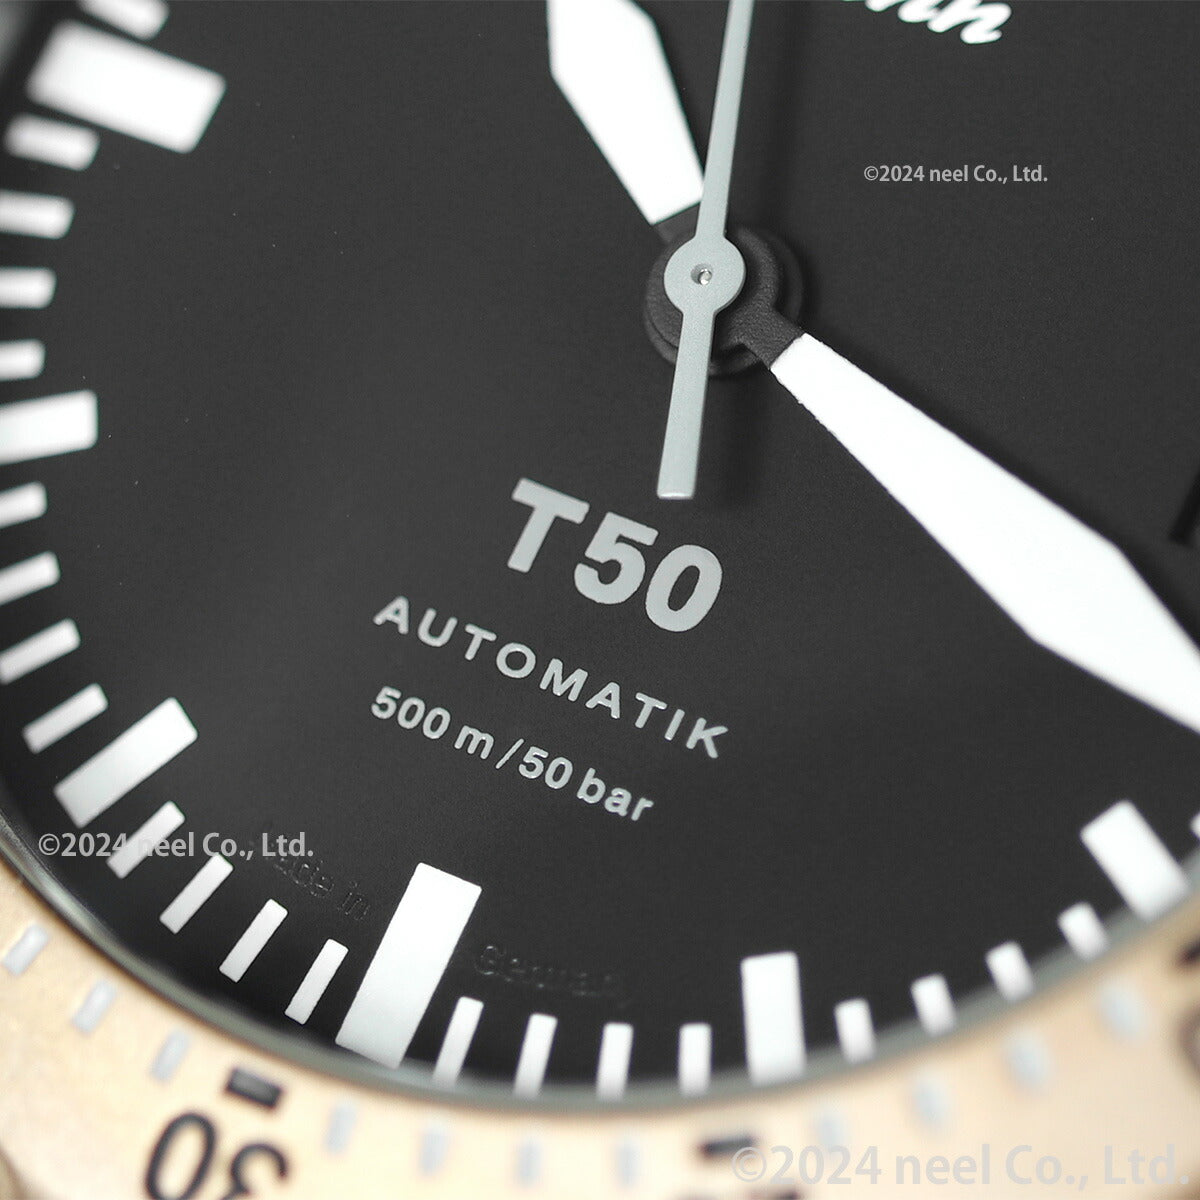 【60回分割手数料無料！】Sinn ジン T50.GBDR 自動巻き 腕時計 メンズ Diving Watches ダイバーズウォッチ テキスタイルストラップ ドイツ製